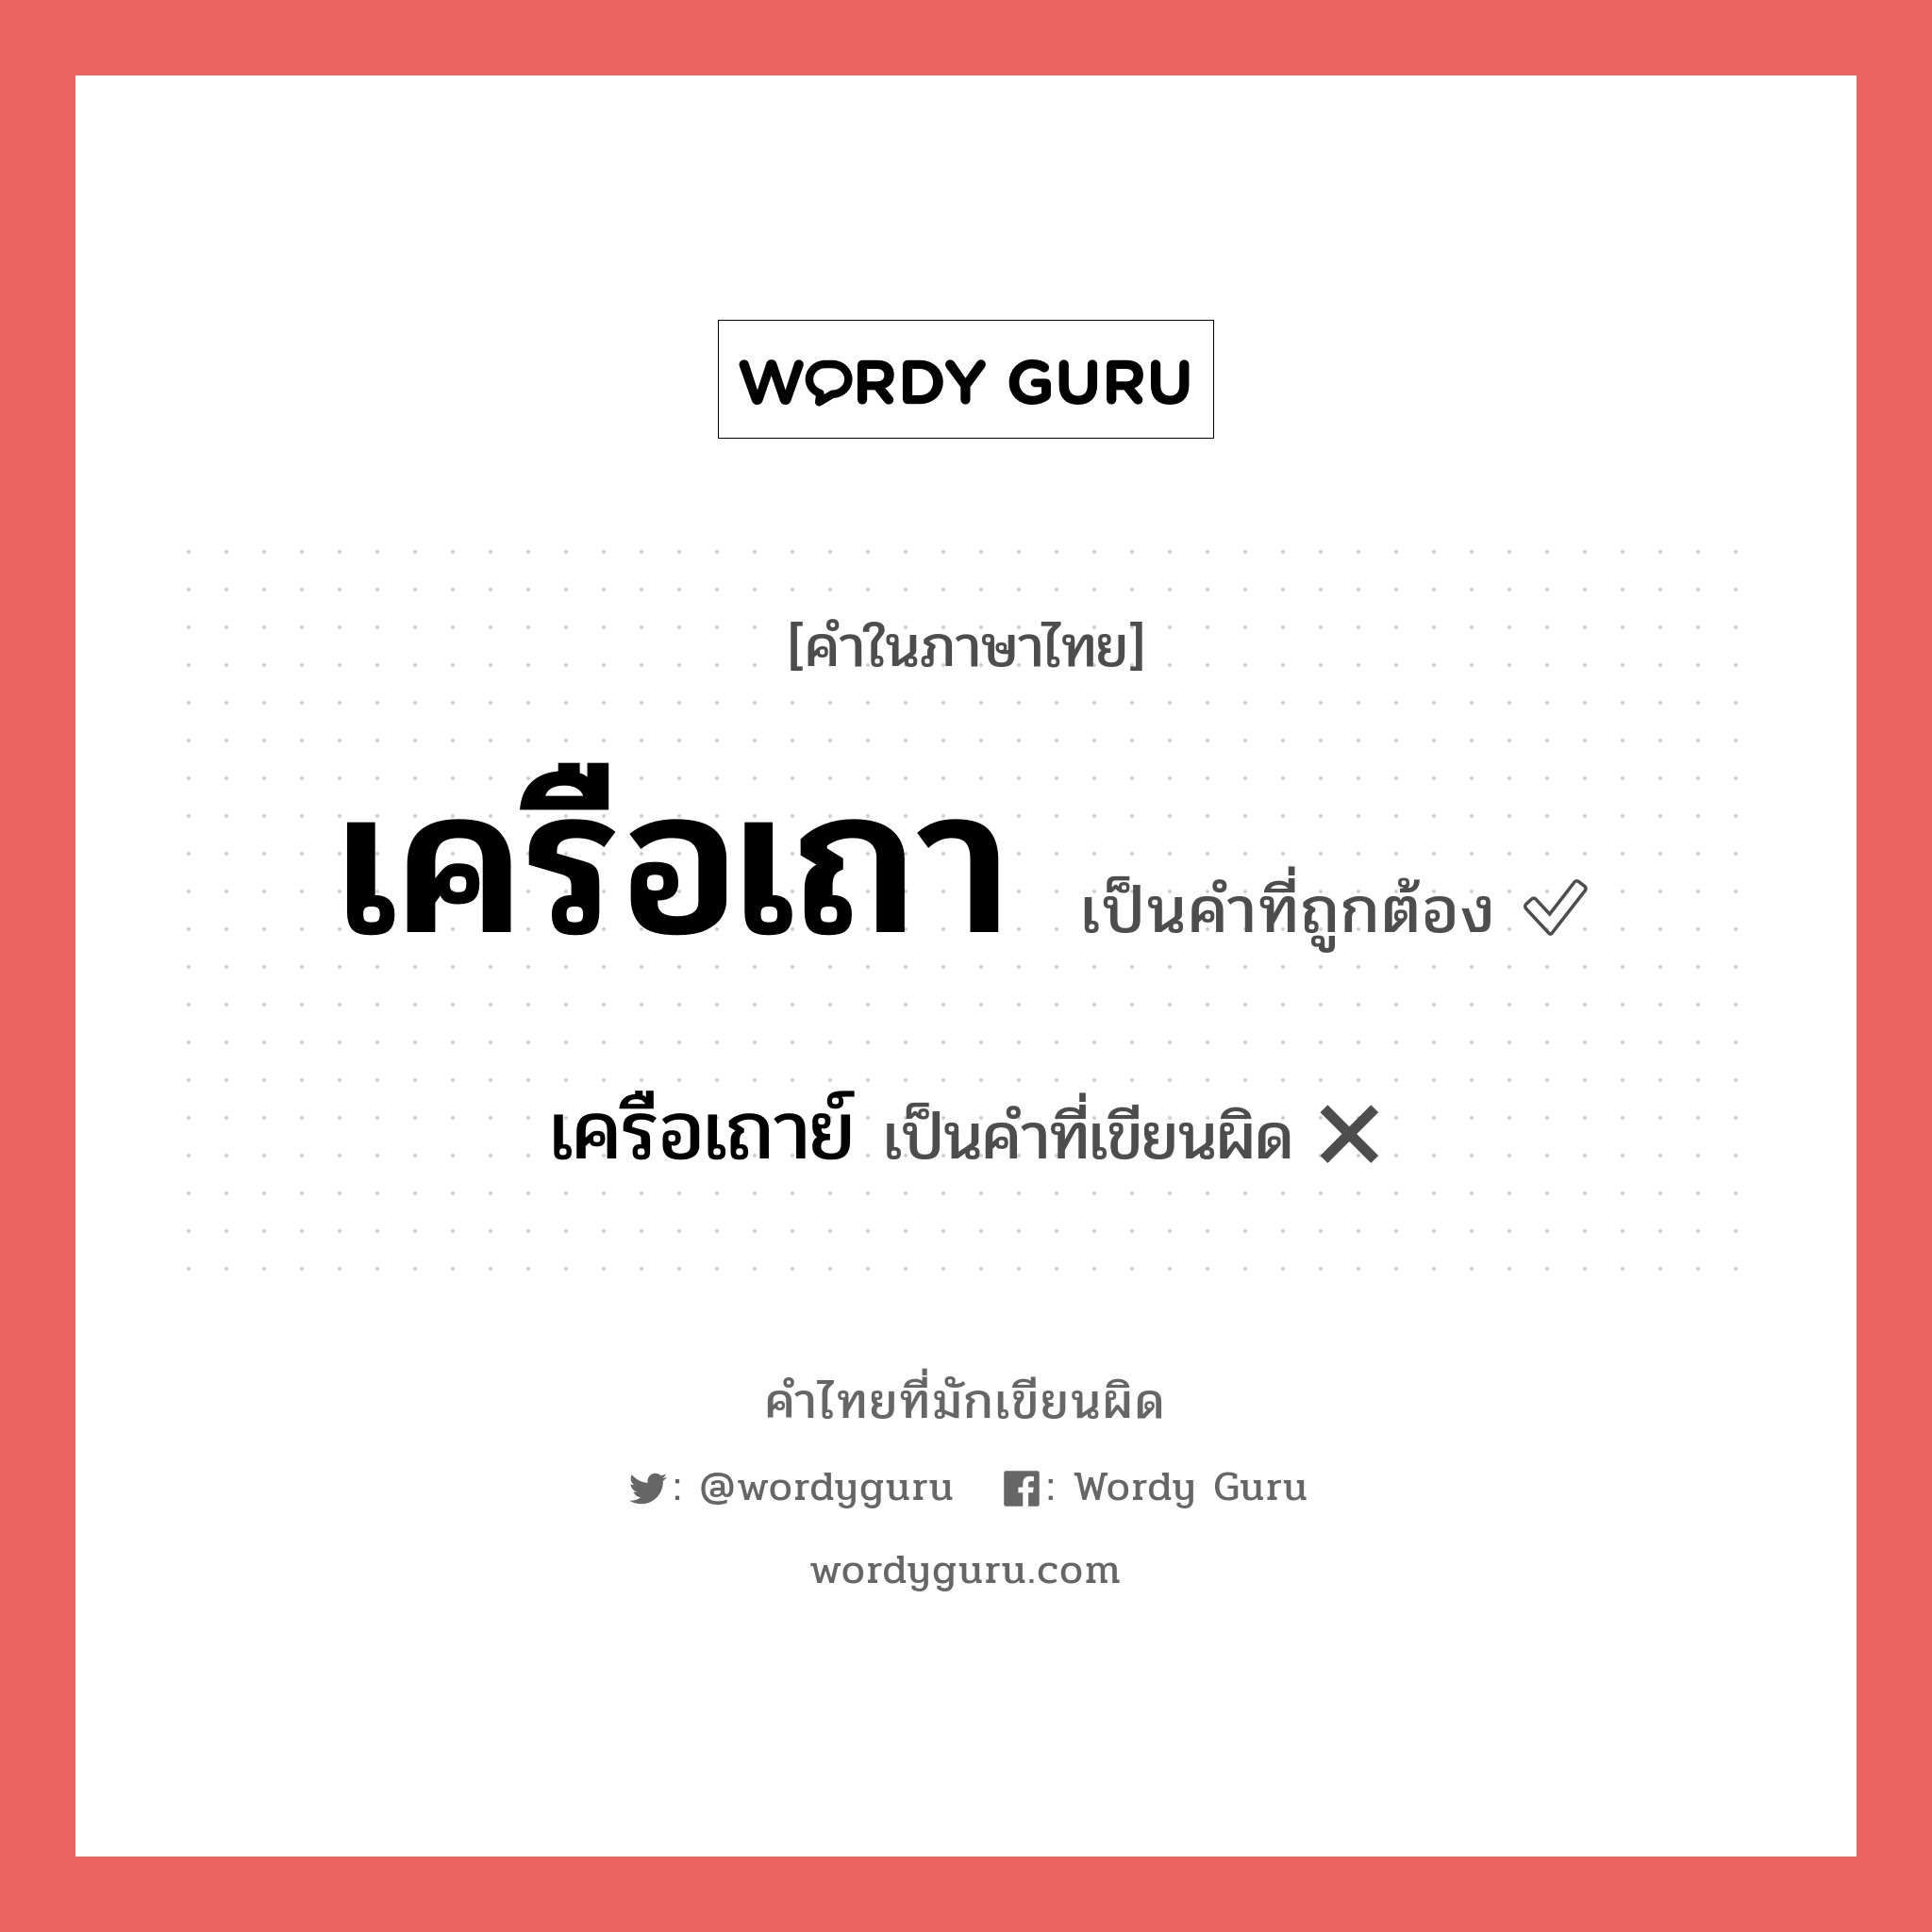 เครือเถา หรือ เครือเถาว์ คำไหนเขียนถูก?, คำในภาษาไทยที่มักเขียนผิด เครือเถา คำที่ผิด ❌ เครือเถาย์